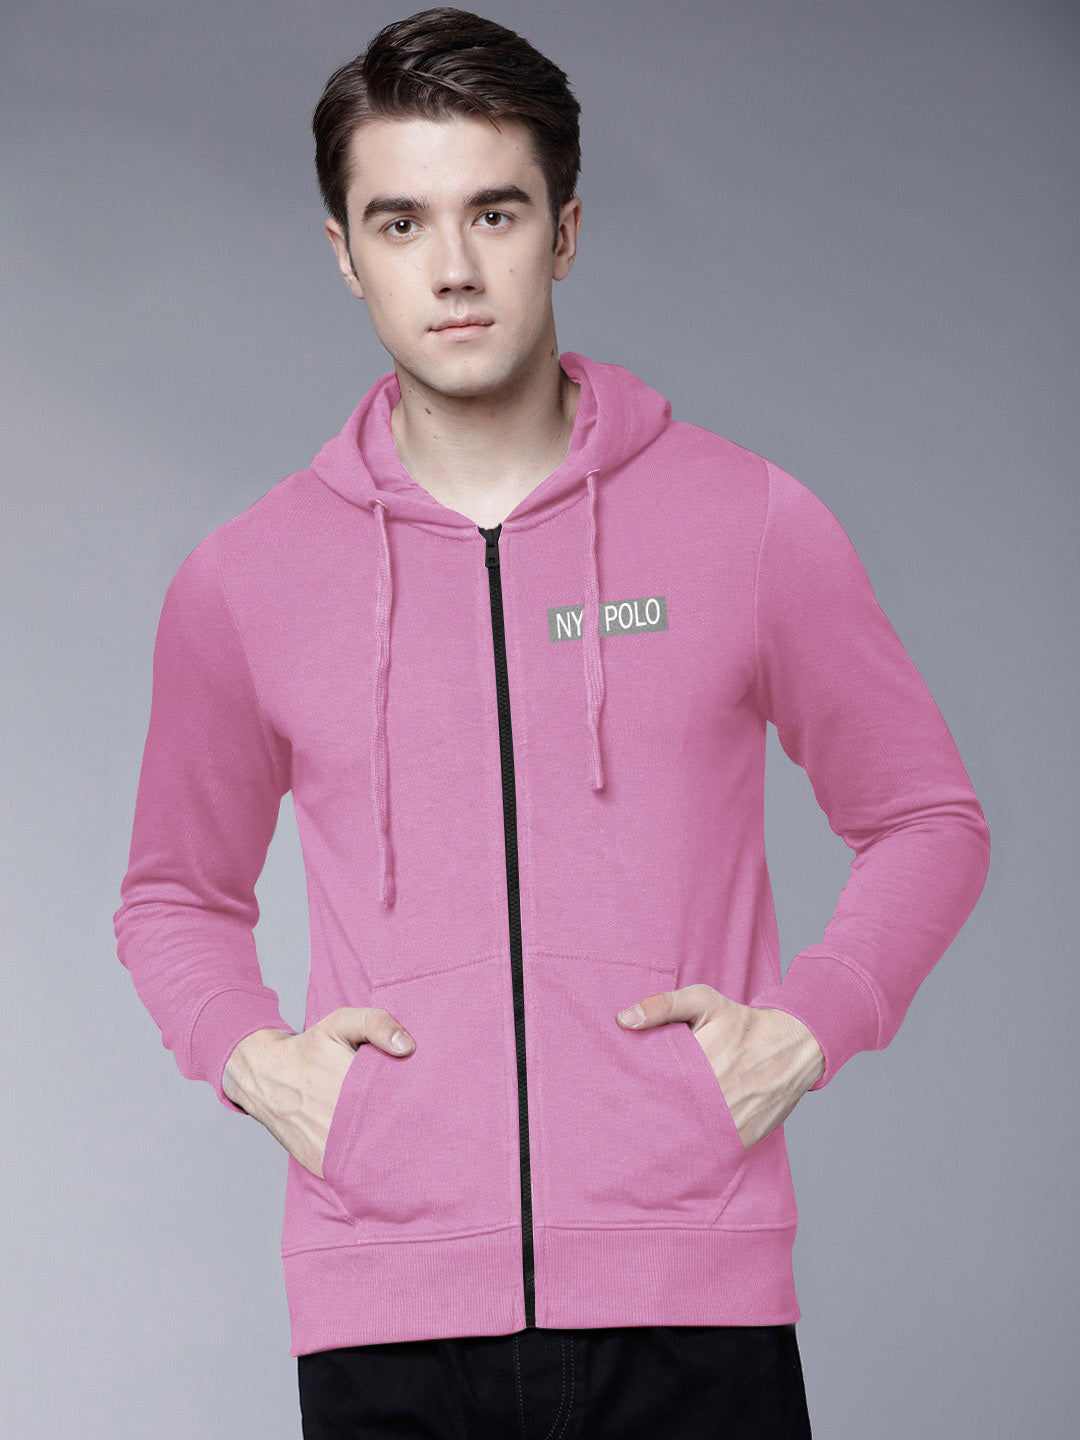 Nyc Polo Fleece Zipper Hoodie For Men-Pink-SP1262